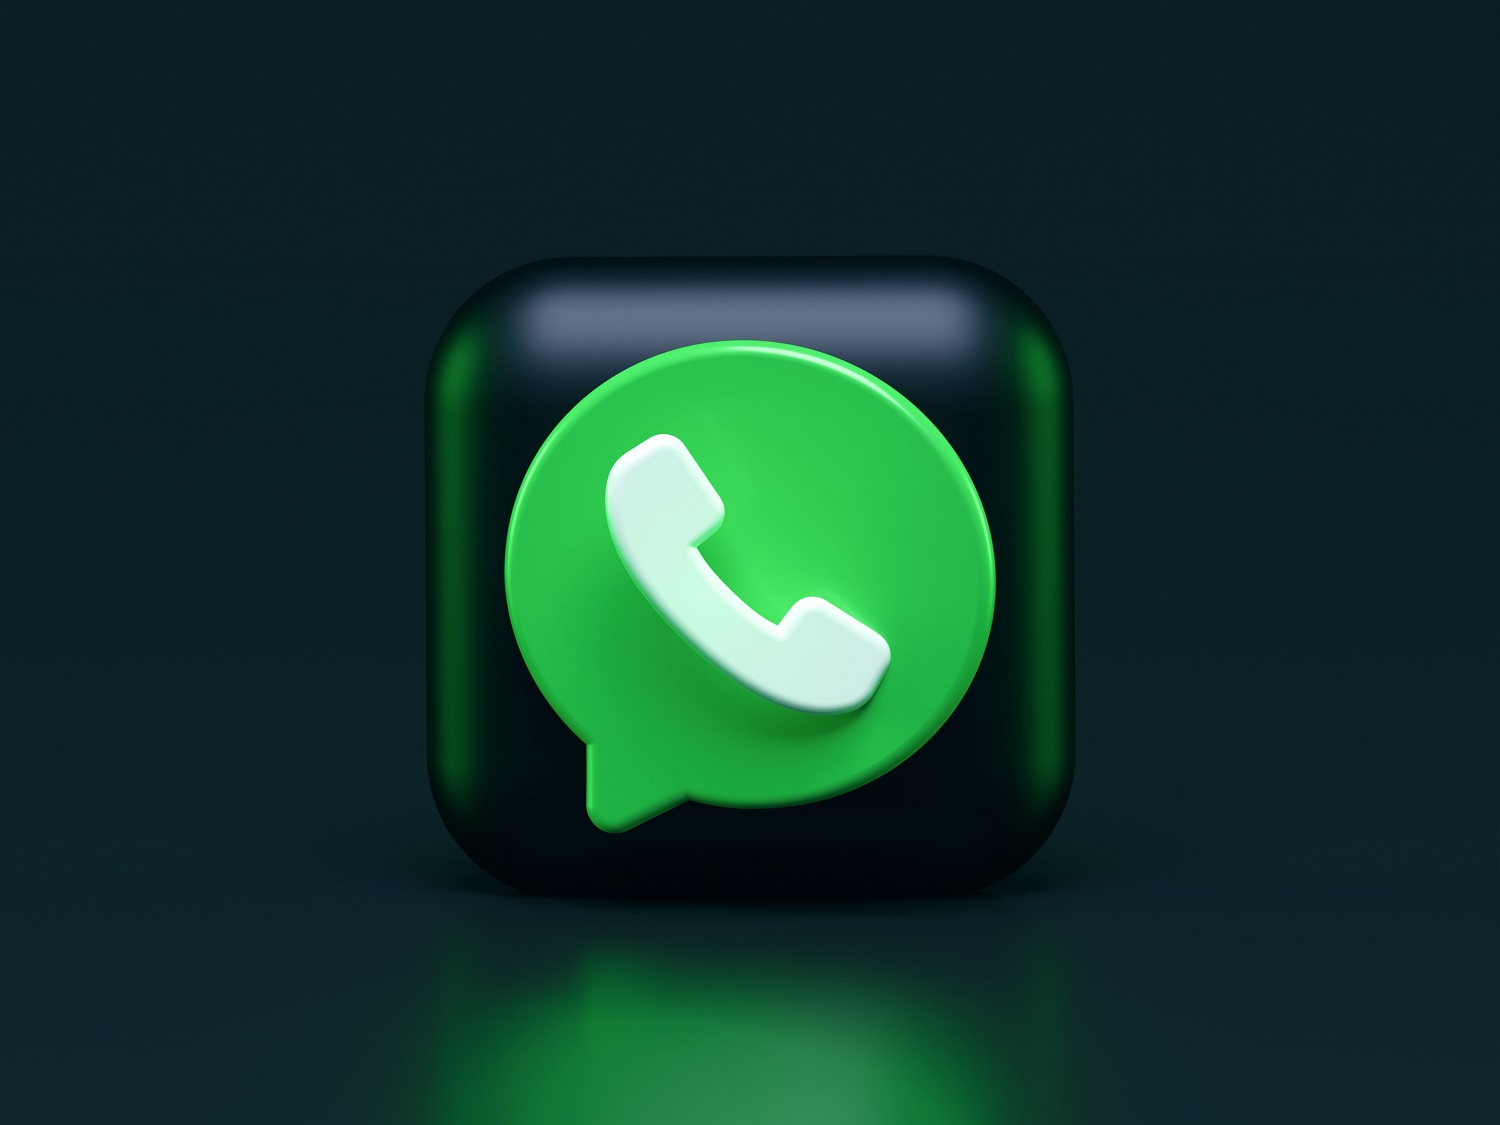 WhatsApp planeja próxima atualização com expansão das reações